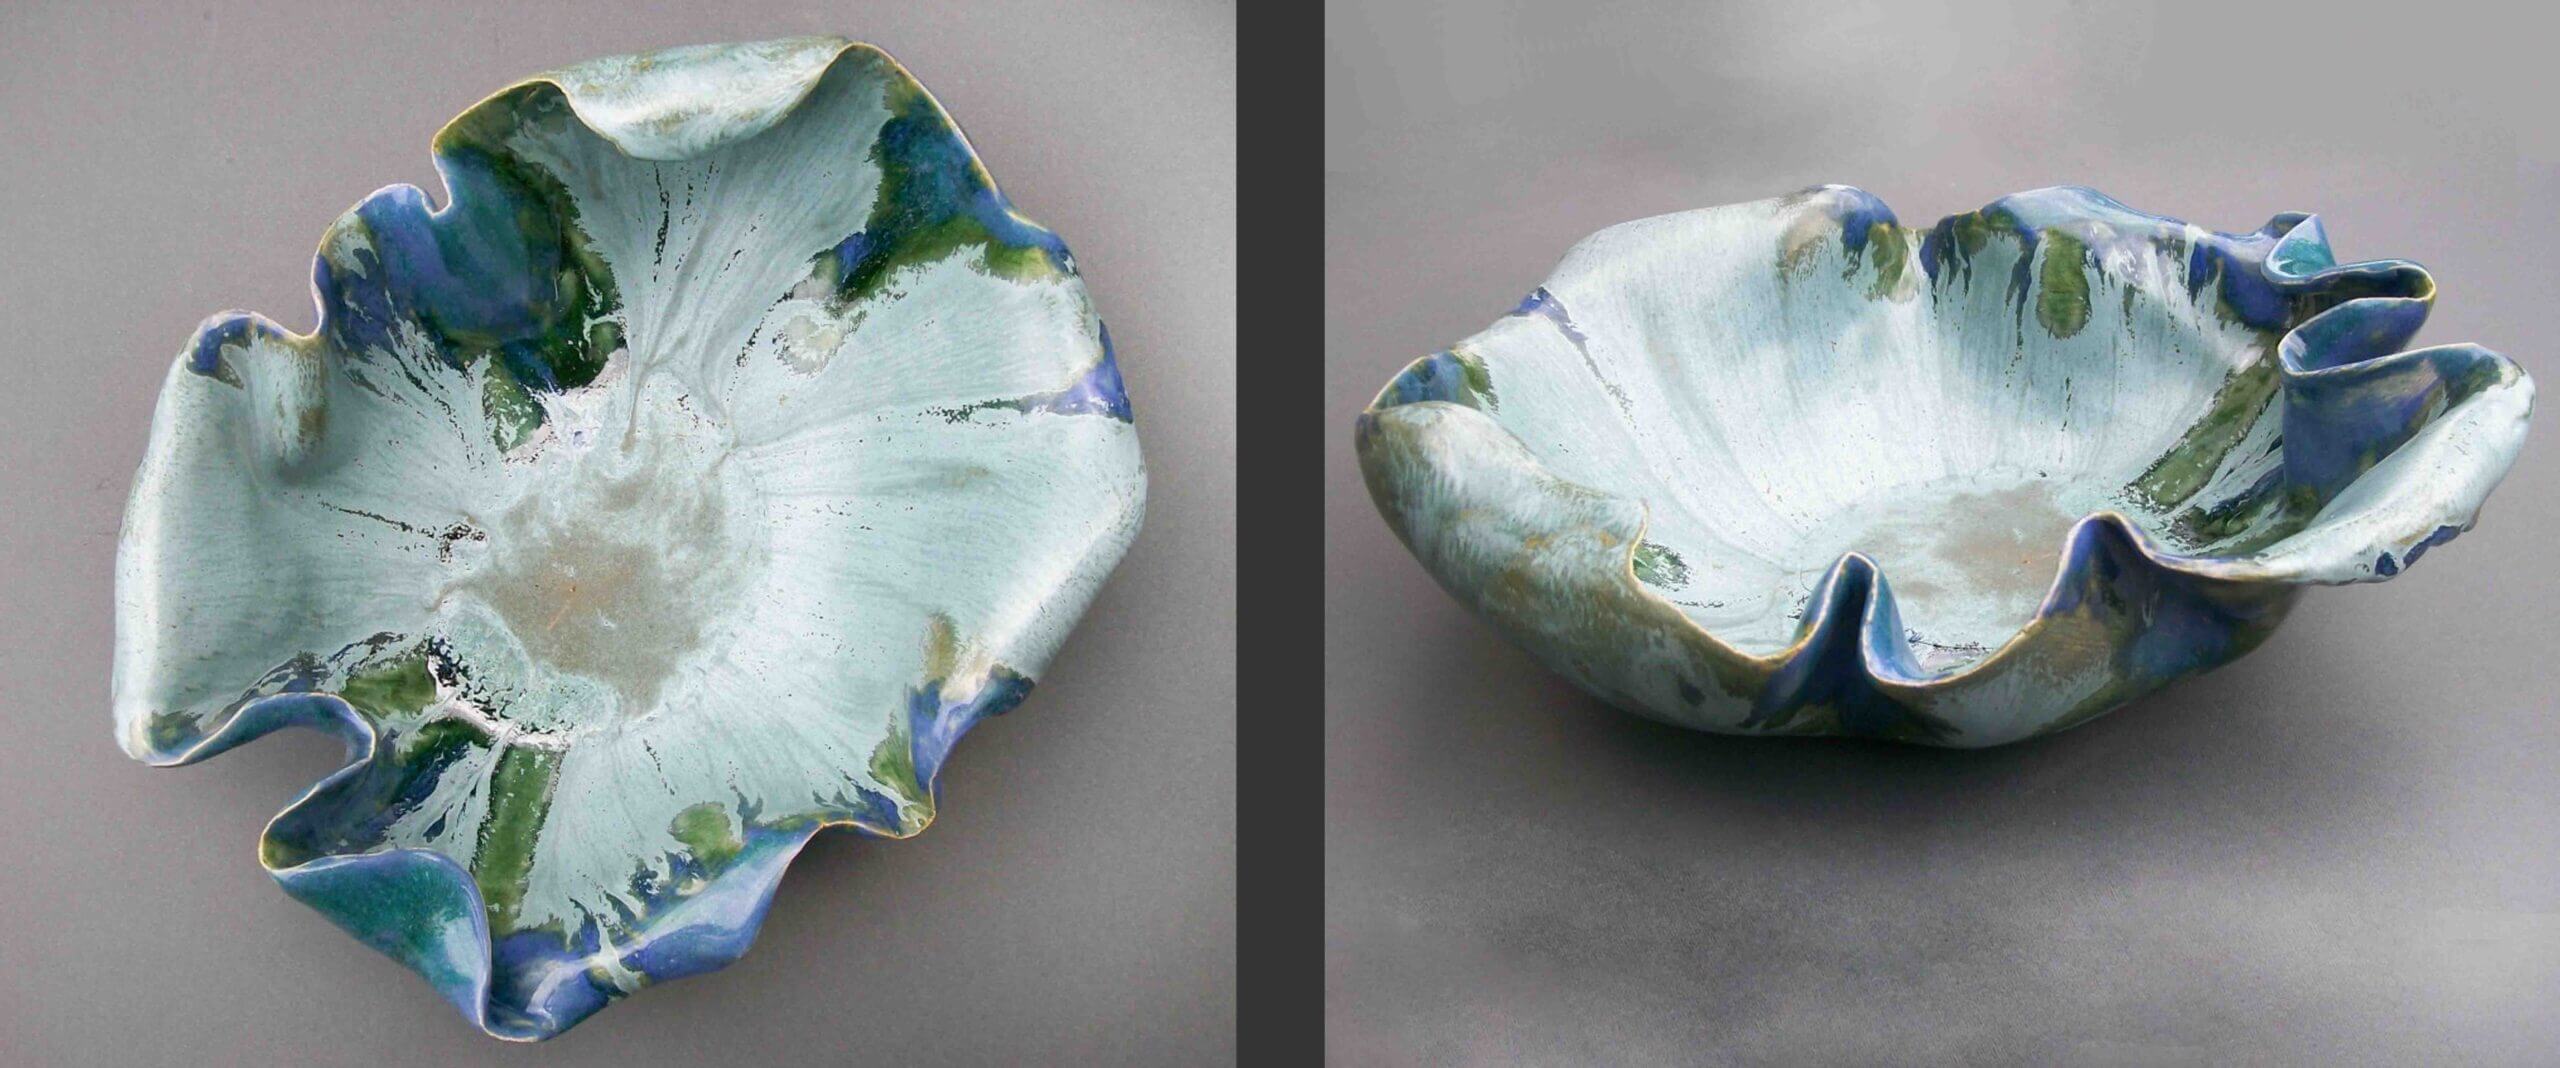 Techniki ceramiki Ceramika glazurowana Ceramika ręcznie formowana Ceramiczne kompozycje i dekoracje Ceramika wypalana w wysokiej temperaturze Ceramika jako prezent